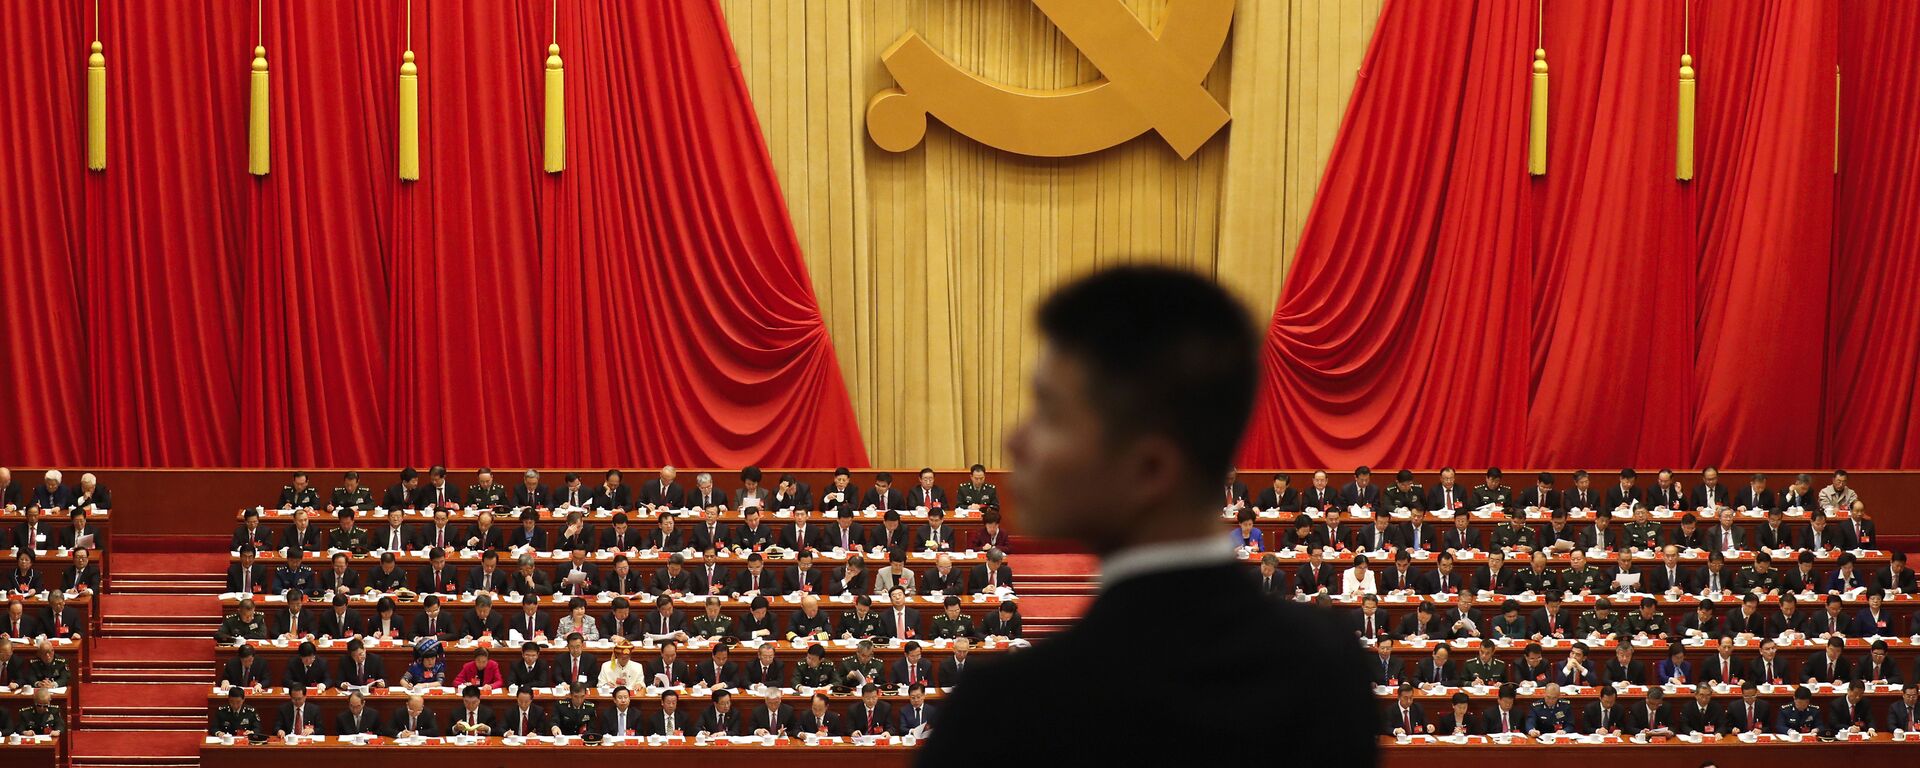 Војник стоји током говора кинеског председника Си Ђинпинга на церемонији отварања 19. конгреса Комунистичке партије у Пекингу - Sputnik Србија, 1920, 21.02.2023